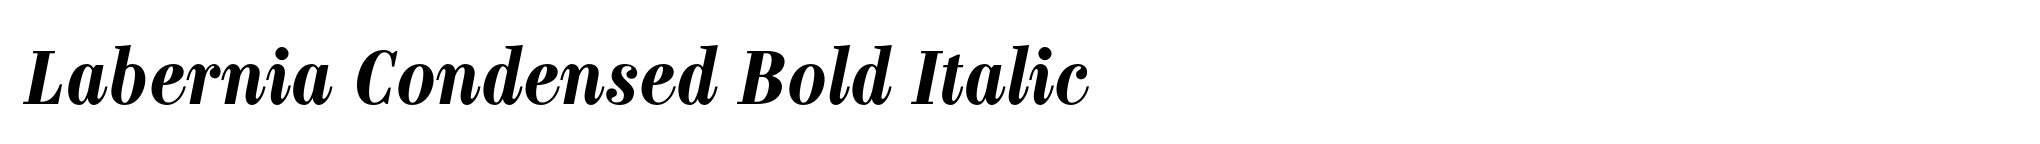 Labernia Condensed Bold Italic image